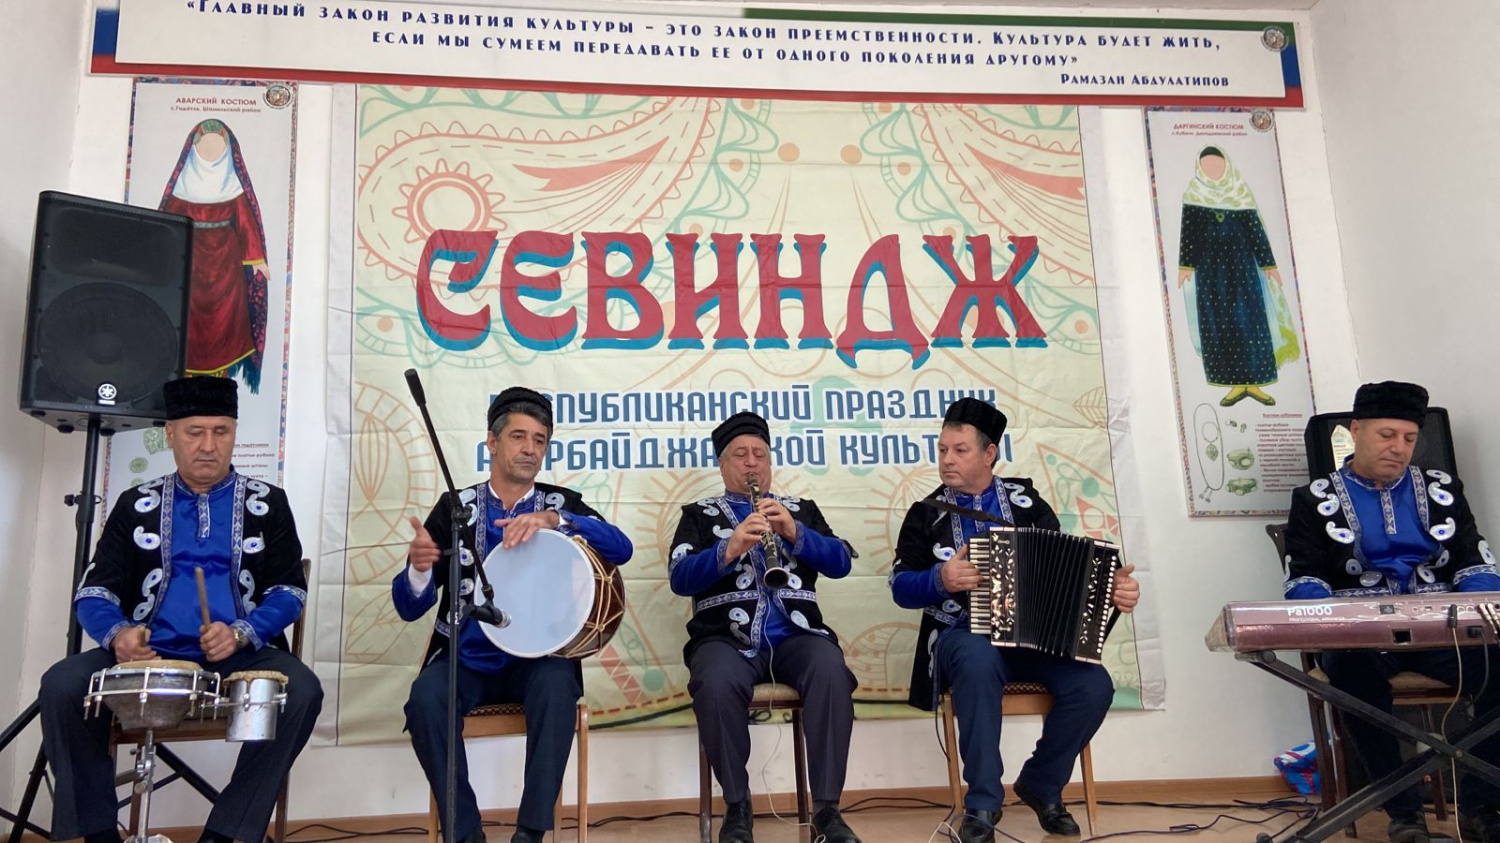 В Дербентском районе состоялся Праздник азербайджанской культуры «Севиндж»